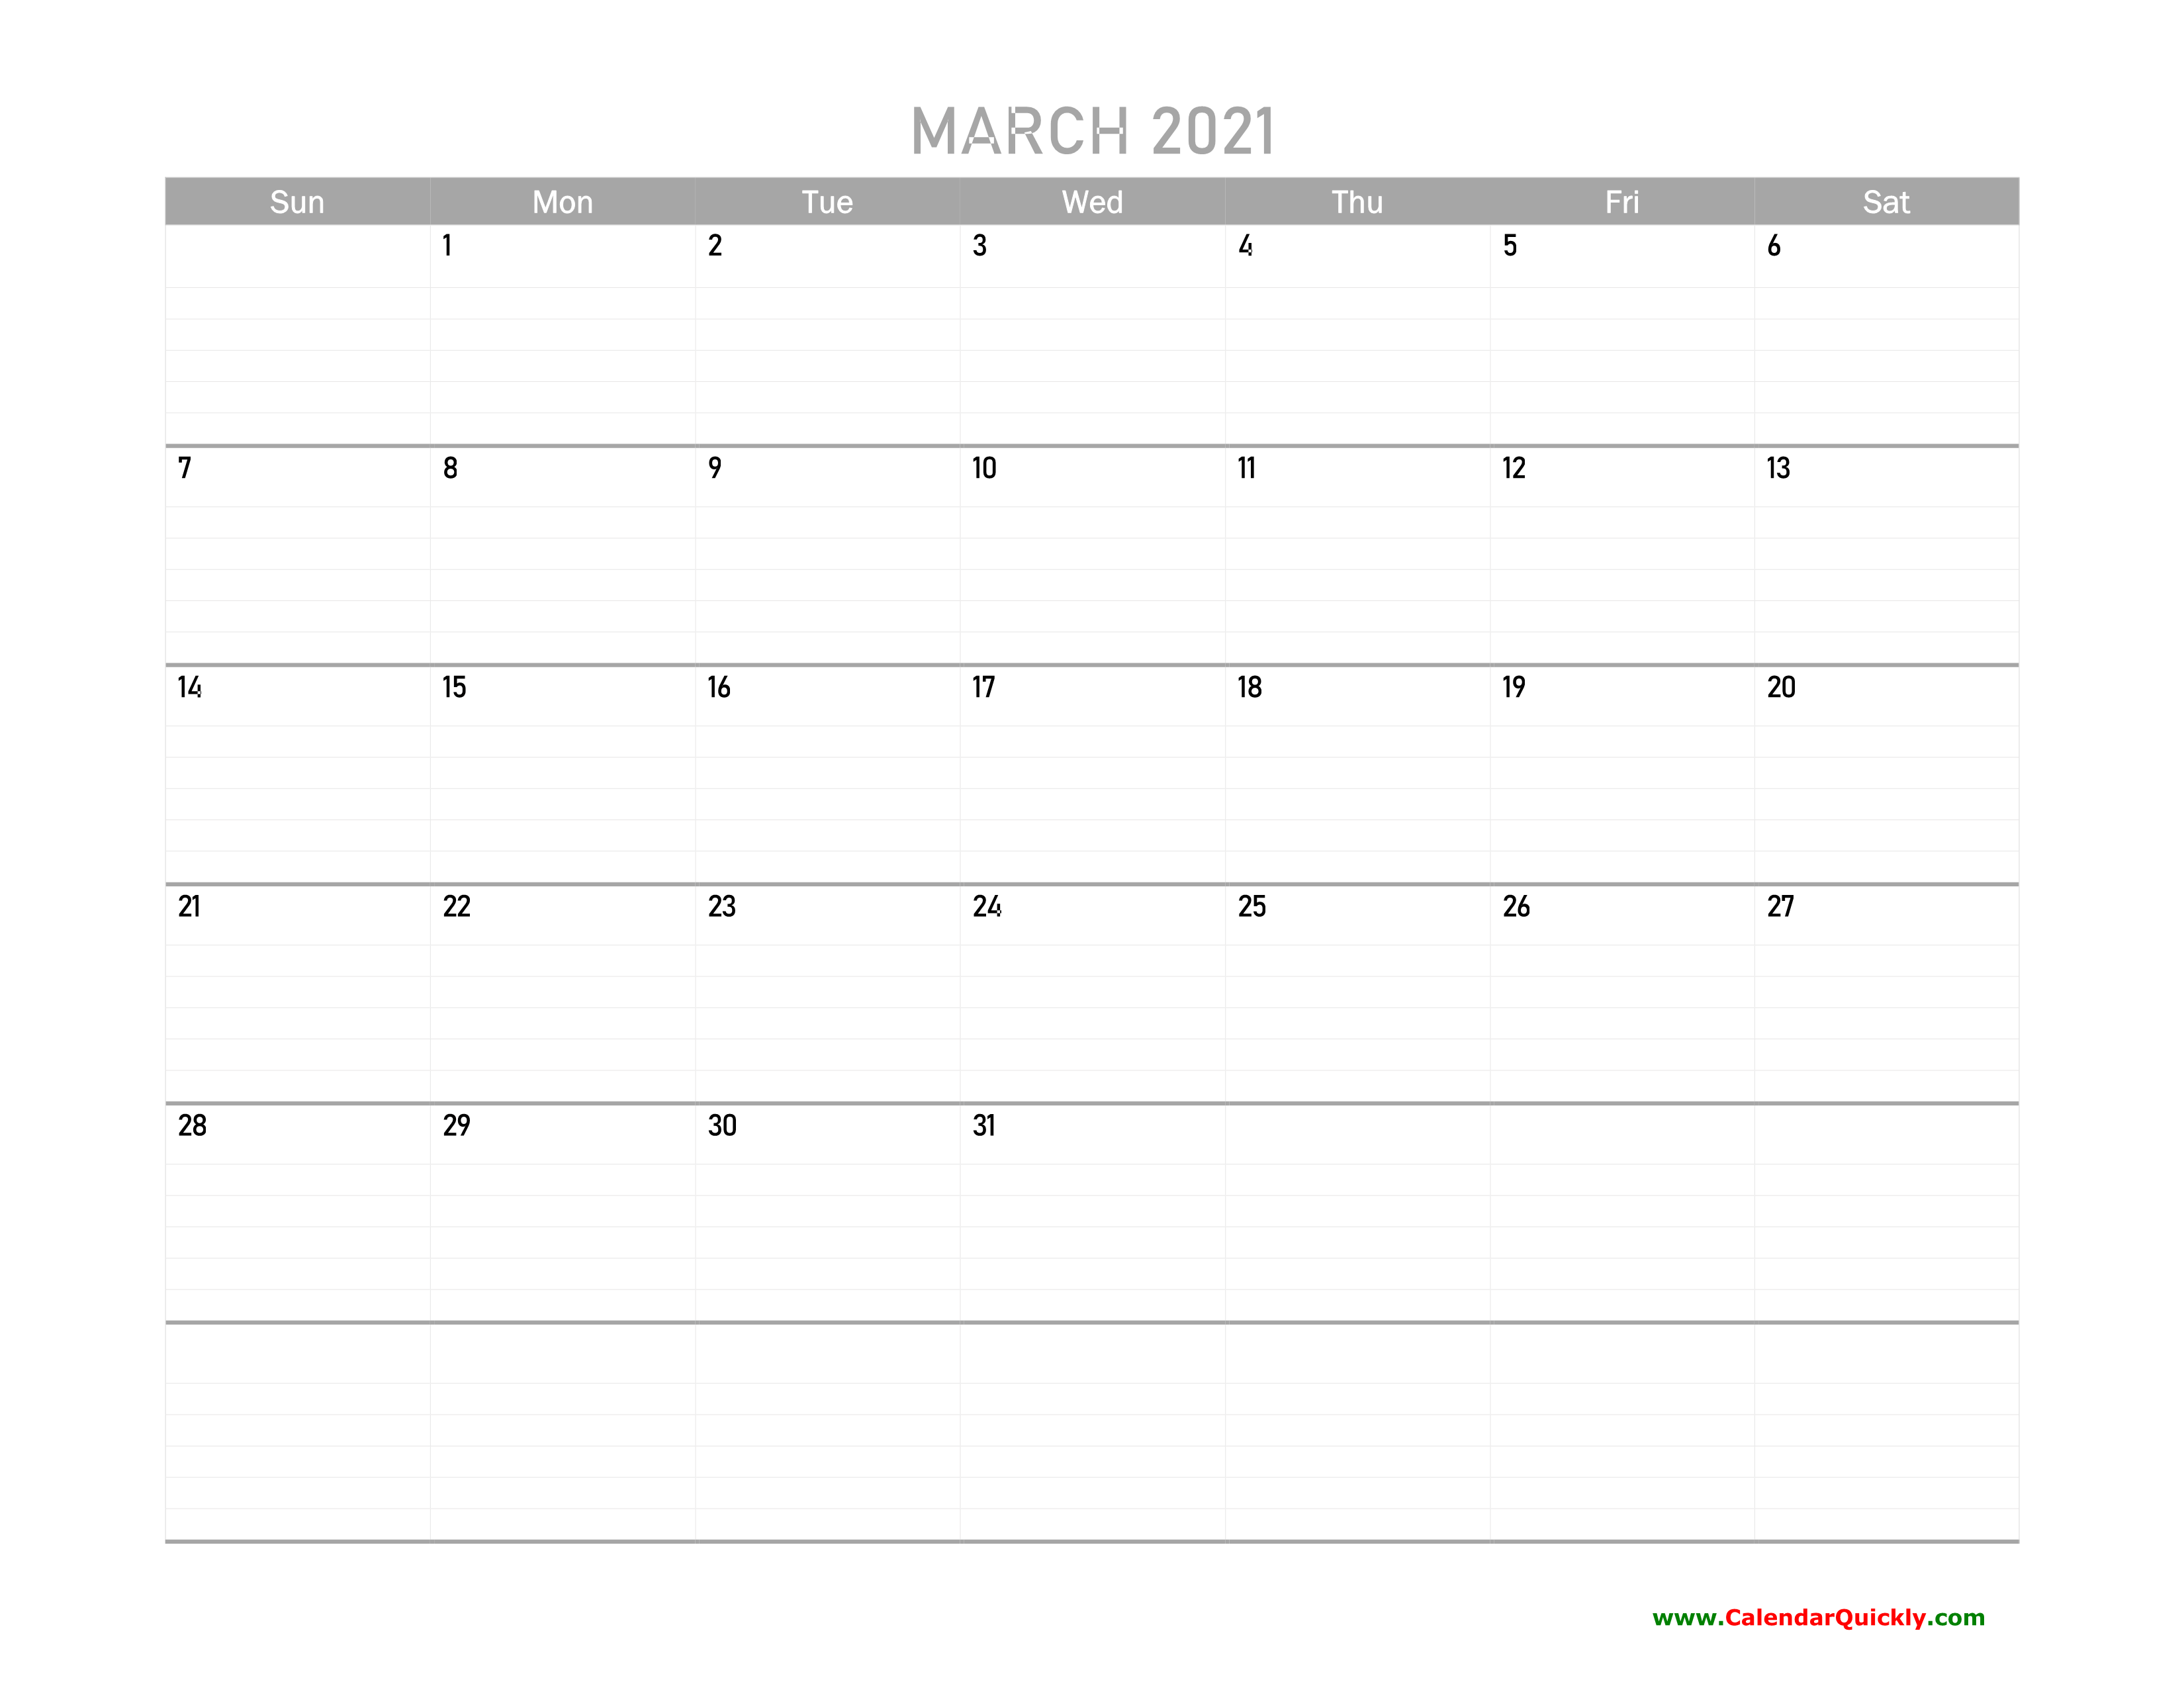 March Calendar 2021 Printable | Calendar Quickly